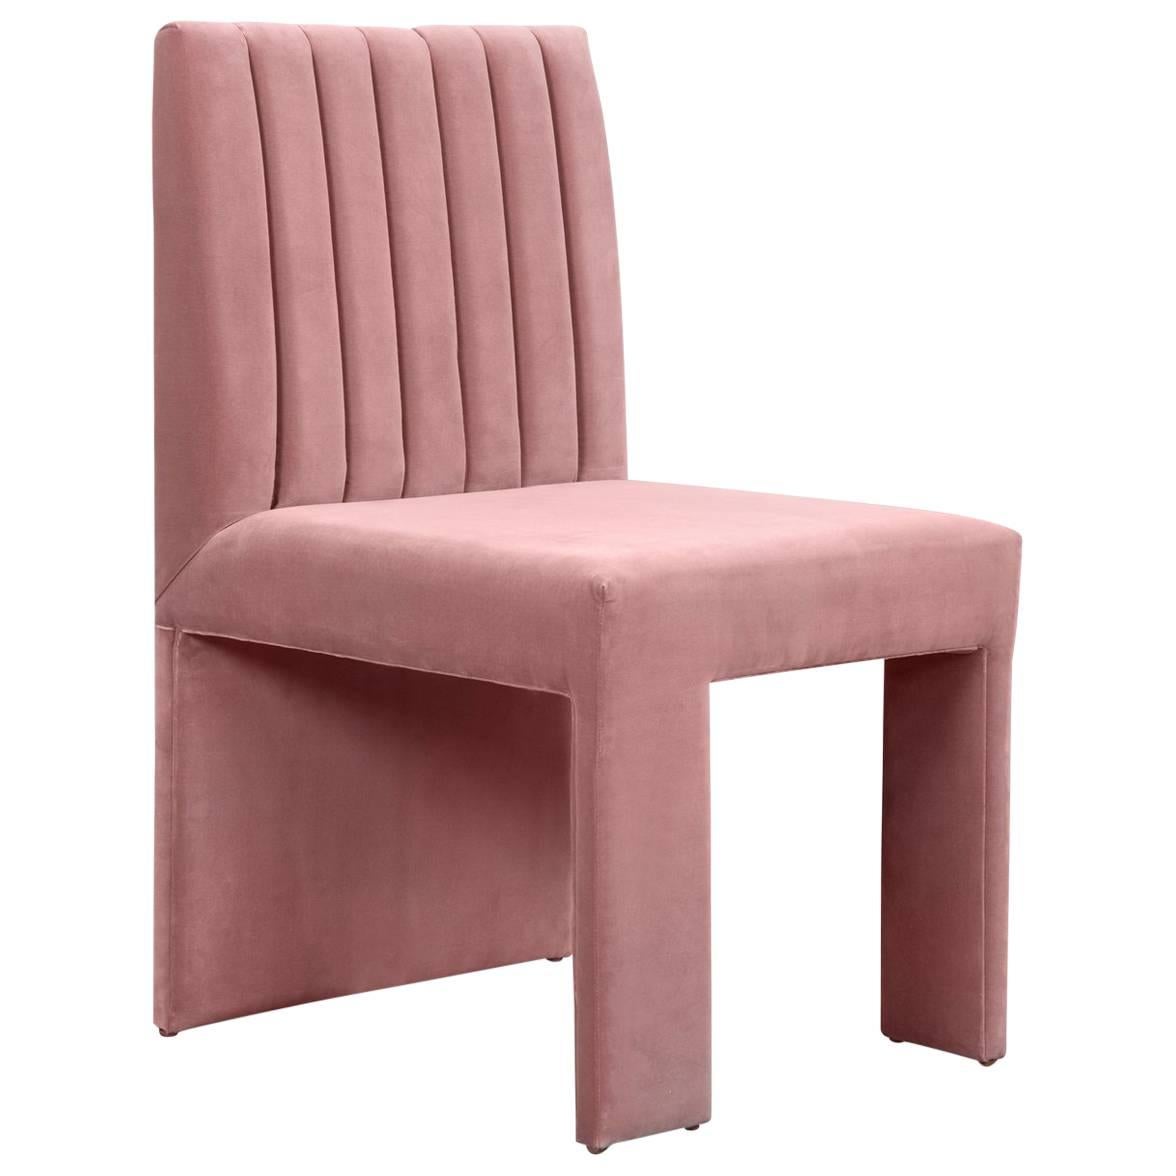 Asymmetric Modern Style St. Martin Dining Chair Lush Velvet Upholstery 7 colors For Sale